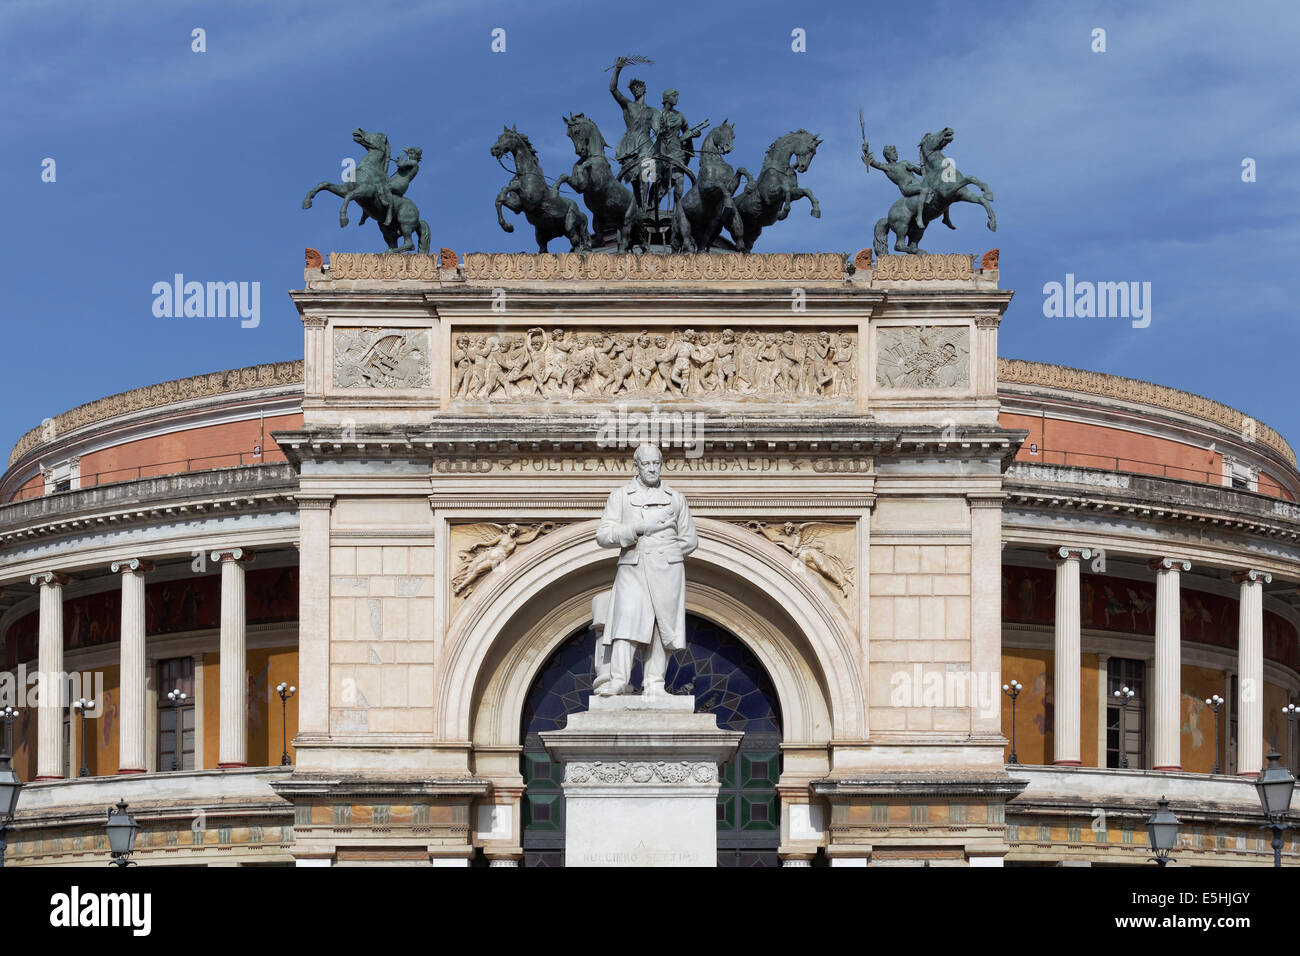 Statue of Ruggero Settimo, Sicilian politician and diplomat, in front of the Teatro Politeama Garibaldi, Palermo, Sicily, Italy Stock Photo